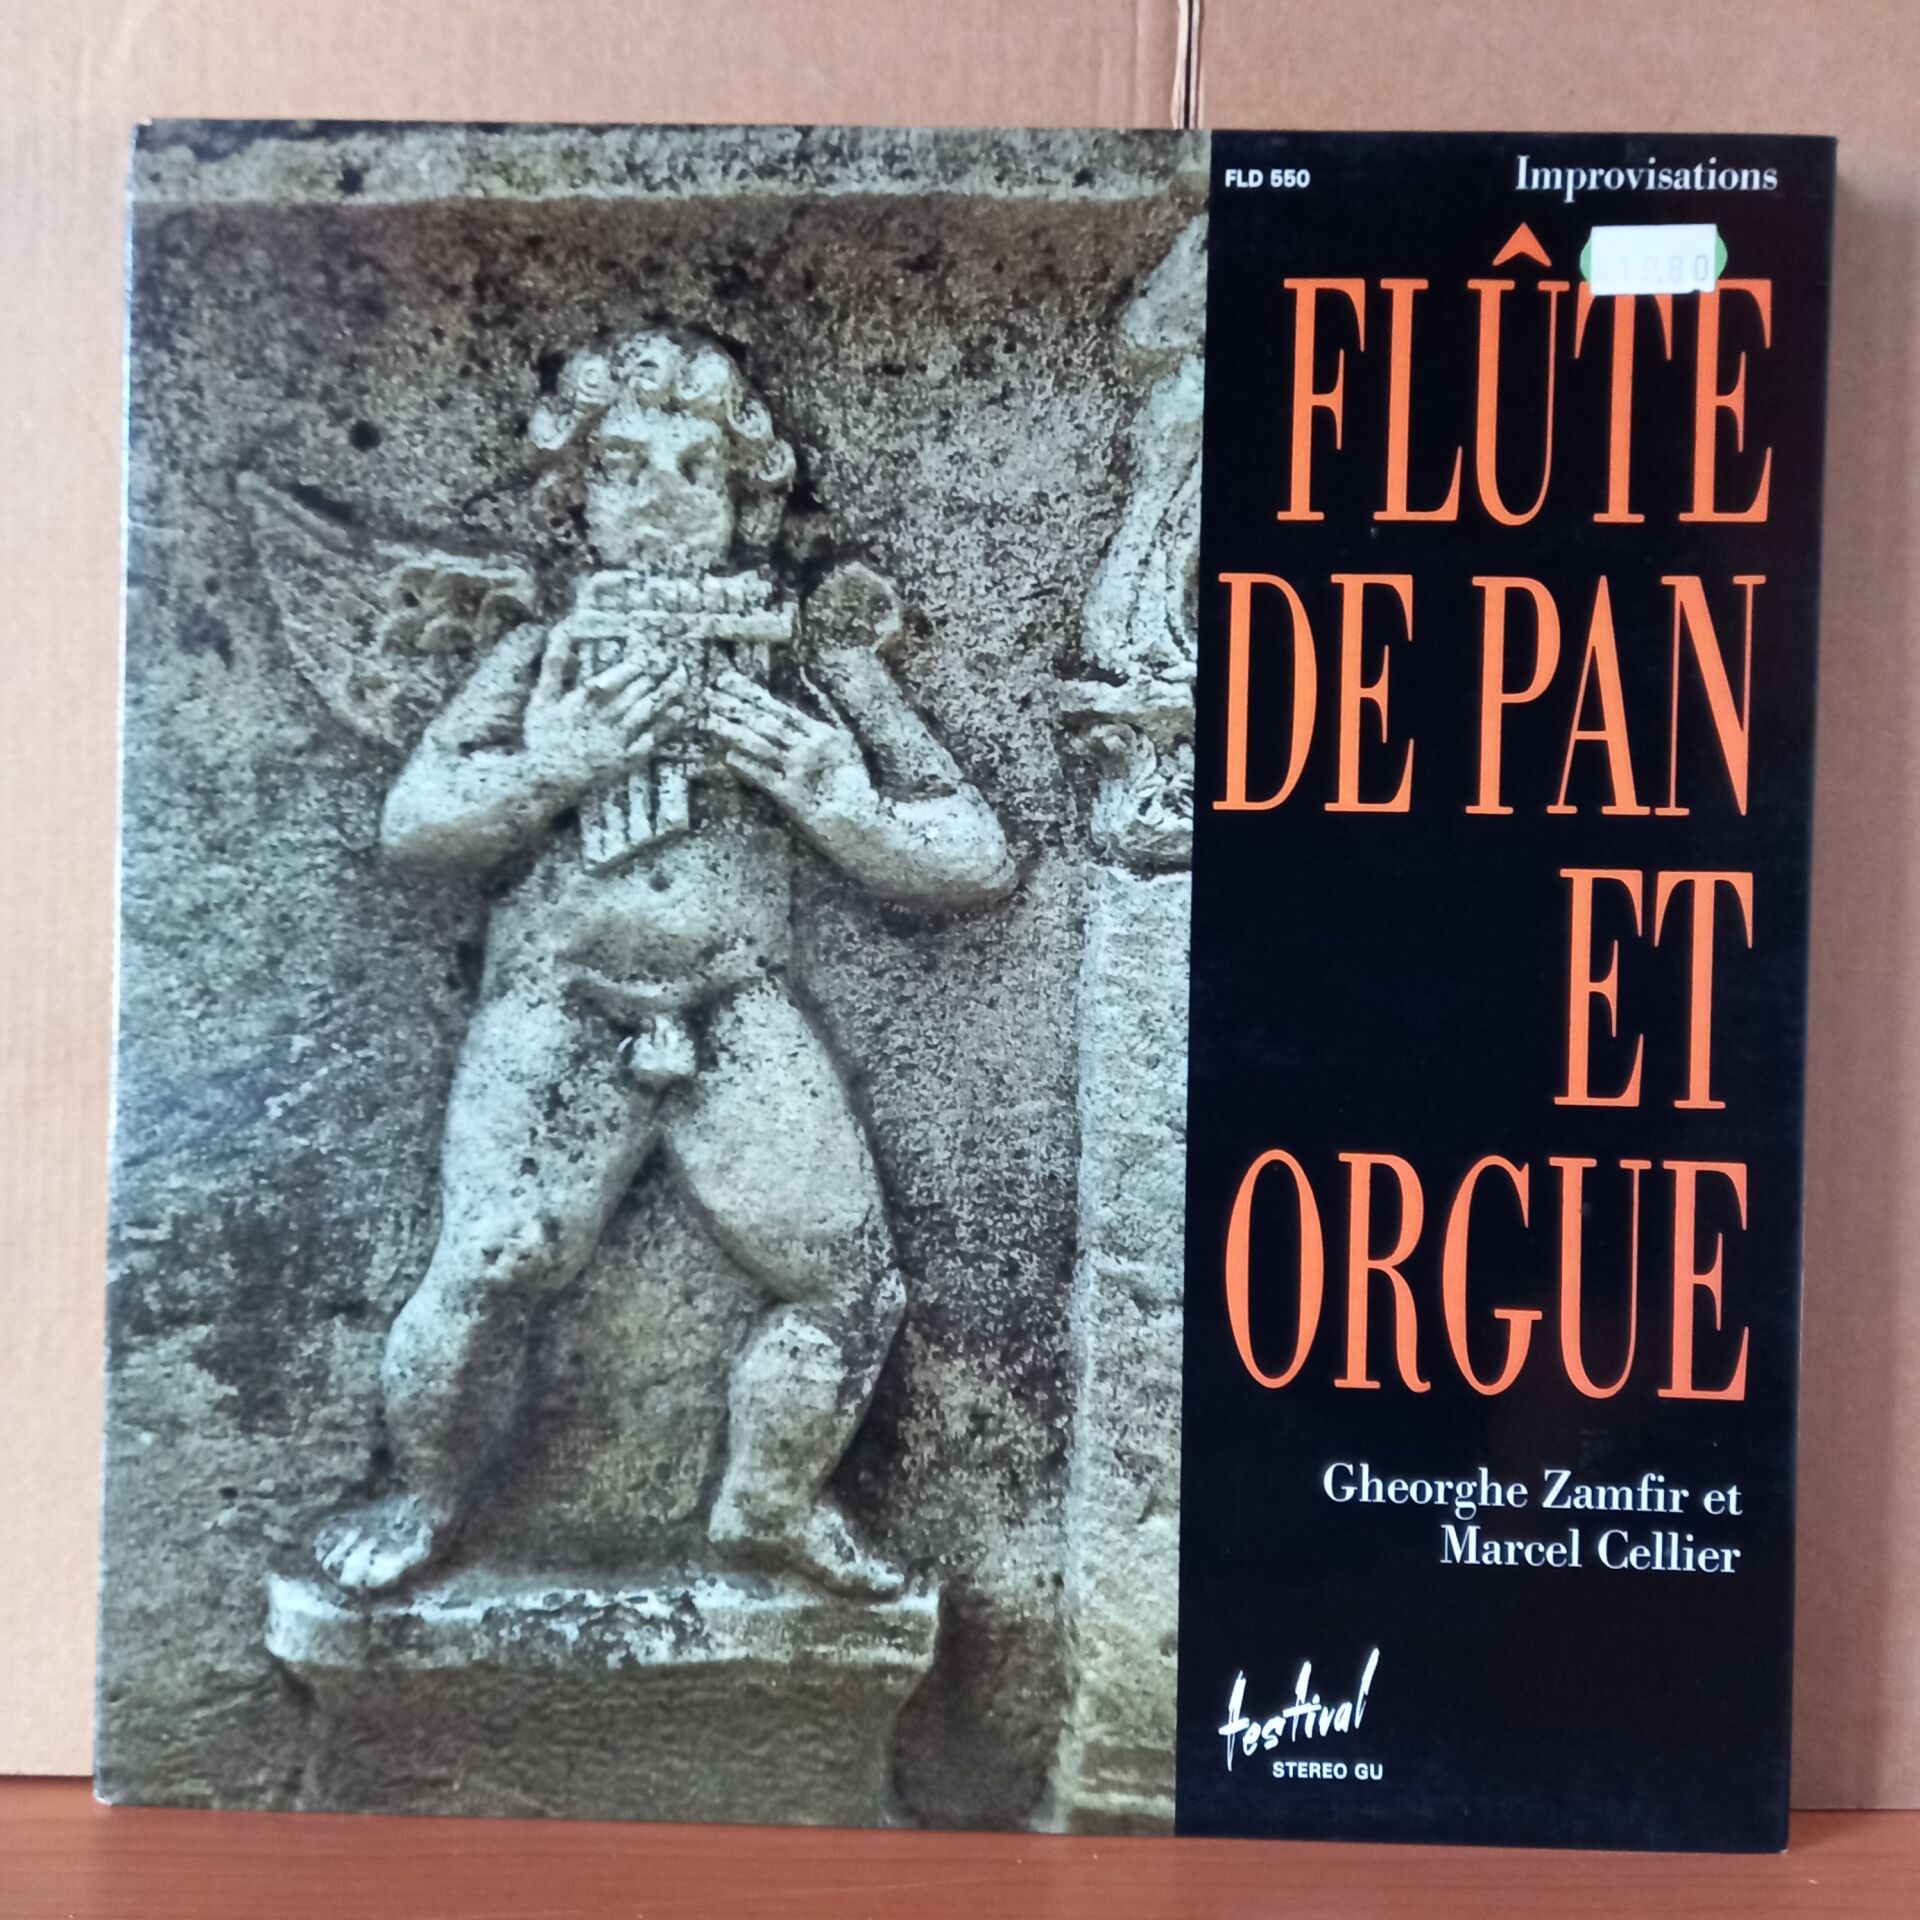 IMPROVISATIONS FLUTE DE PAN ET ORGUE / GHEORGHE ZAMFIR ET MARCEL CELLIER (1975) - LP 2. EL PLAK